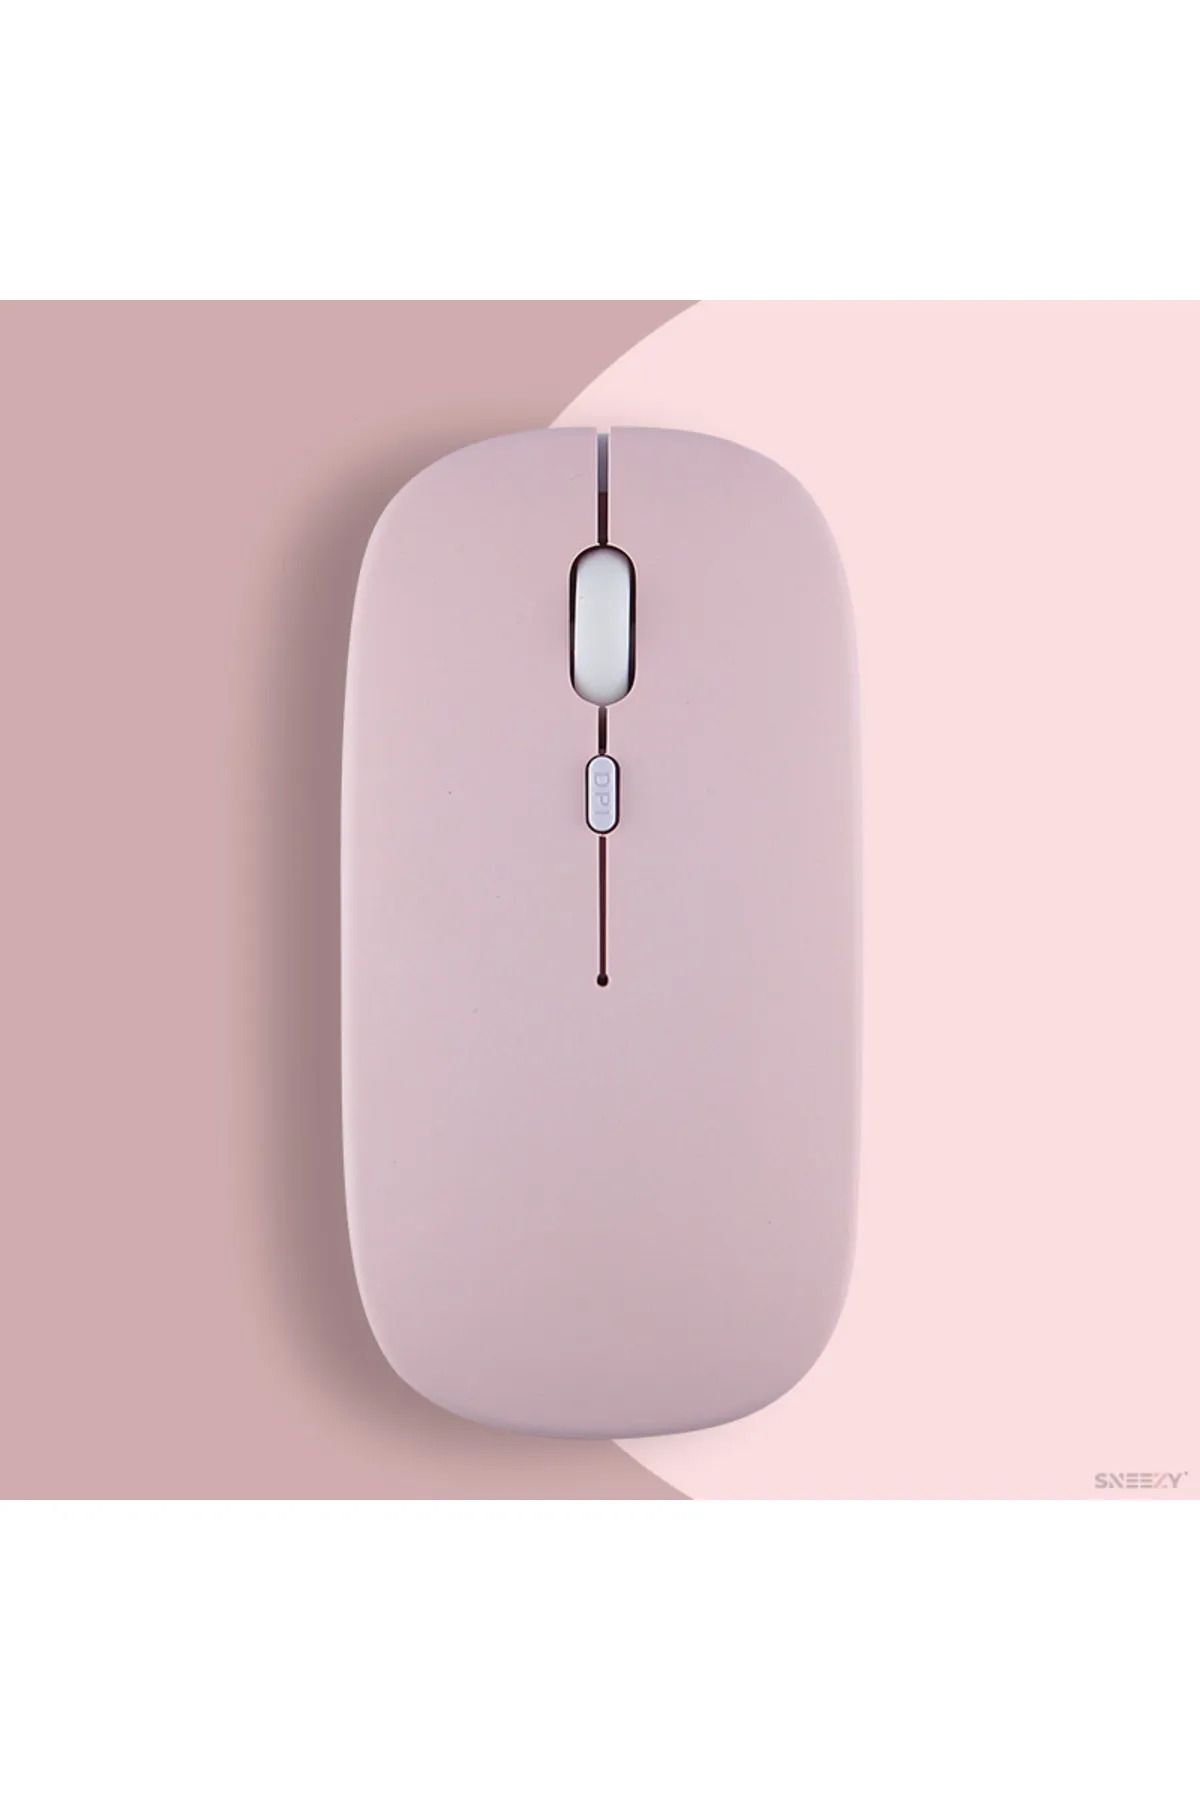 SKYNEX Kablosuz Wireless Mouse Renkli Ayıcık Tasarım Kablosuz Sessiz Bilgisayar Laptop için Pilli Fare M2